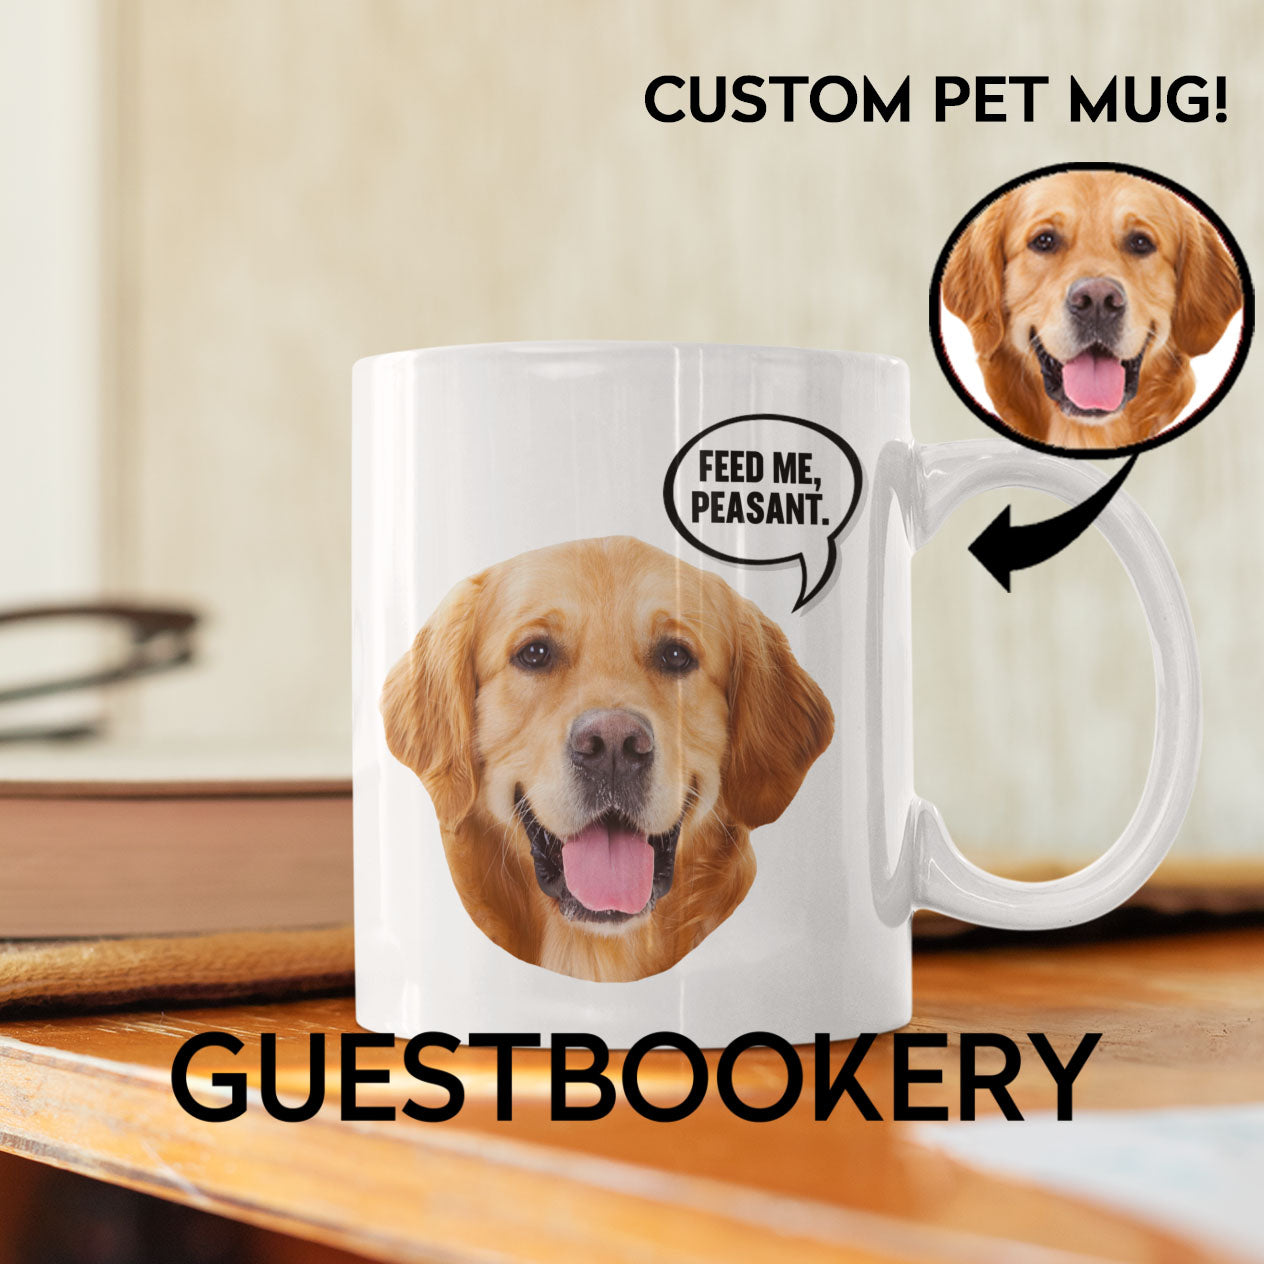 Put your Golden Retriever on a Mug! - Custom Pet Mug